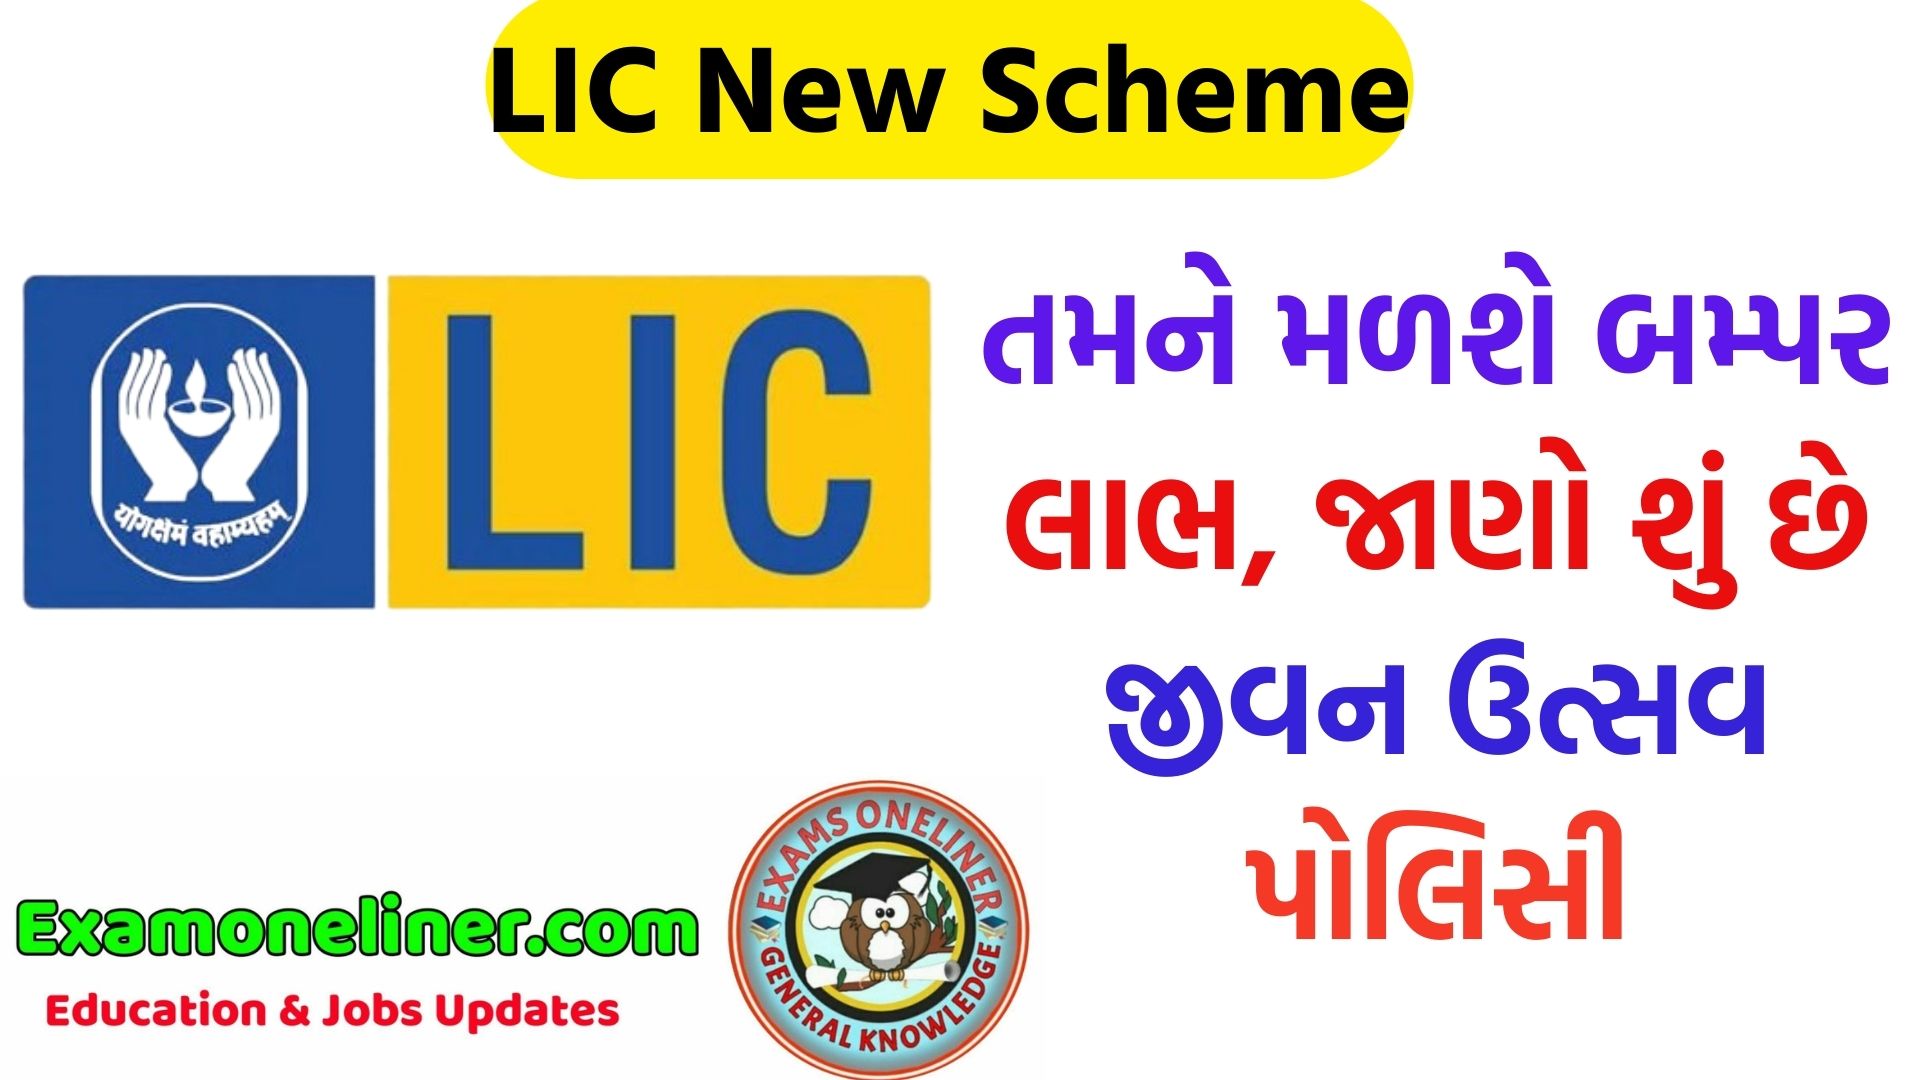 LIC New Scheme